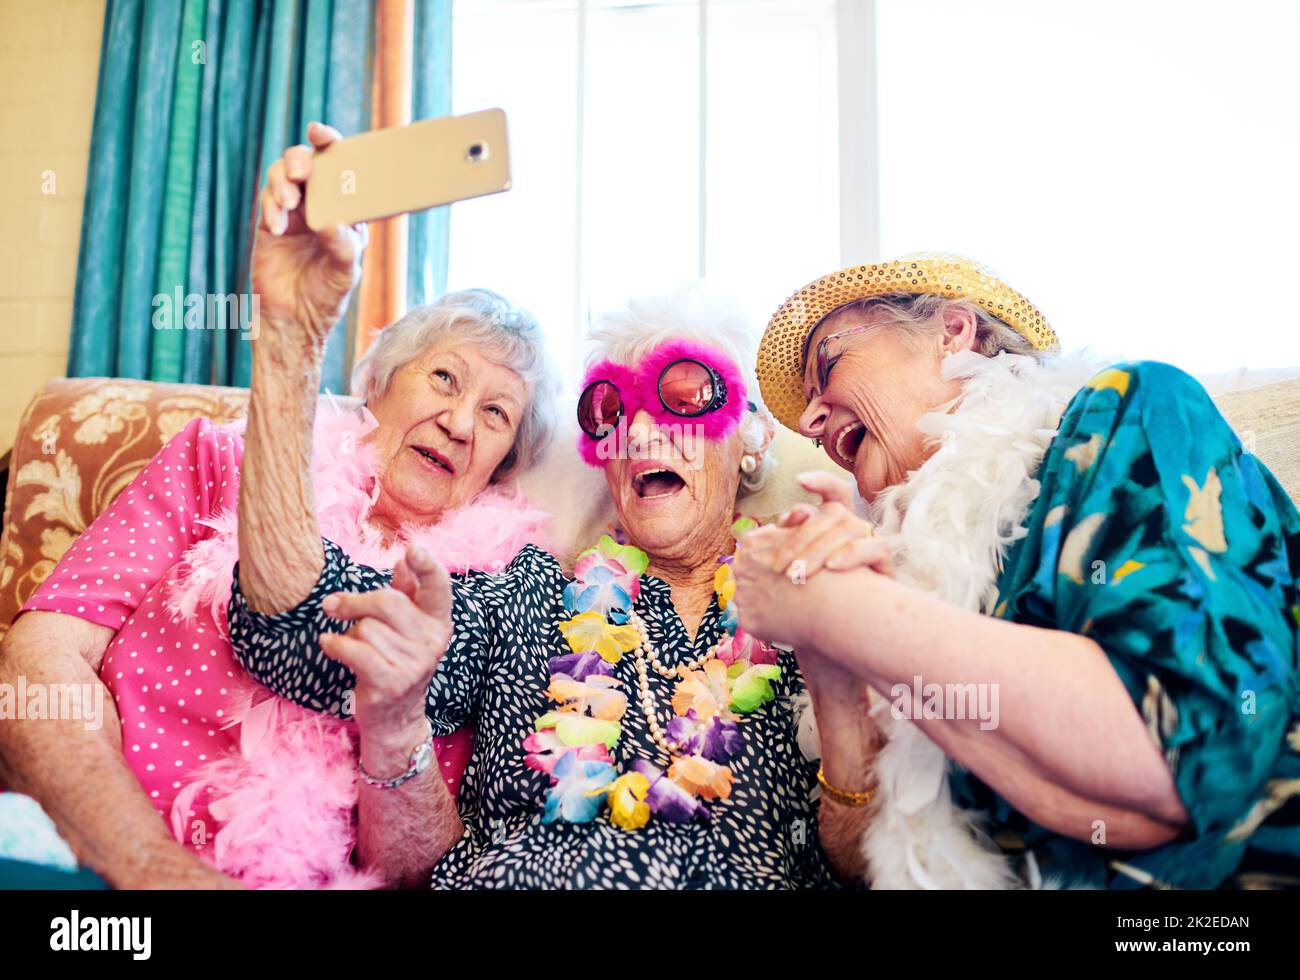 Come funziona questa cosa. Girato di un gruppo spensierato persone anziane indossando costumi funky e avvicinandosi per un selfie all'interno di un edificio. Foto Stock